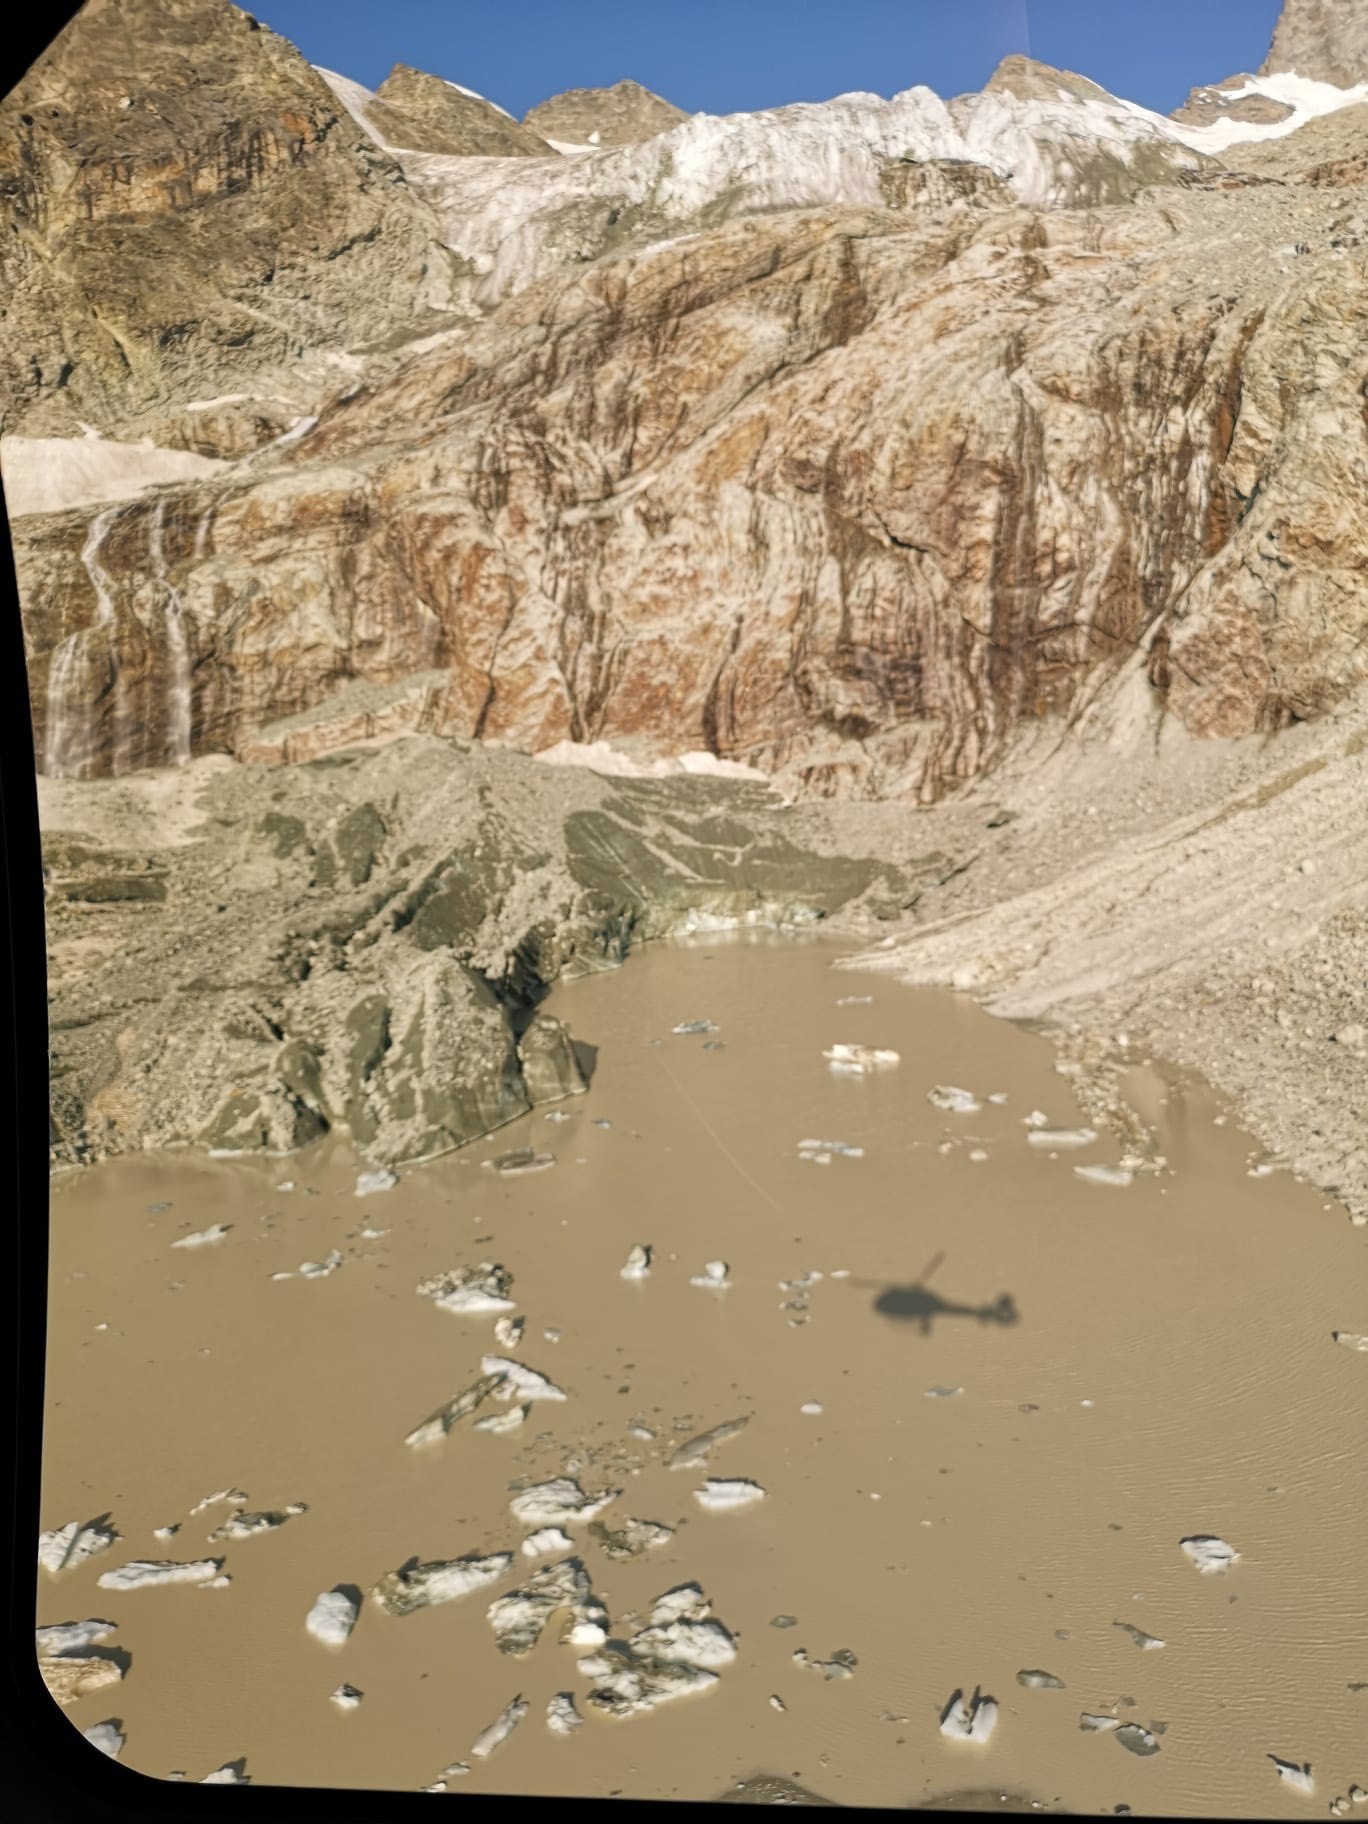 La rupture d'une poche glaciaire a entraîné une inondation depuis le glacier de Trift.